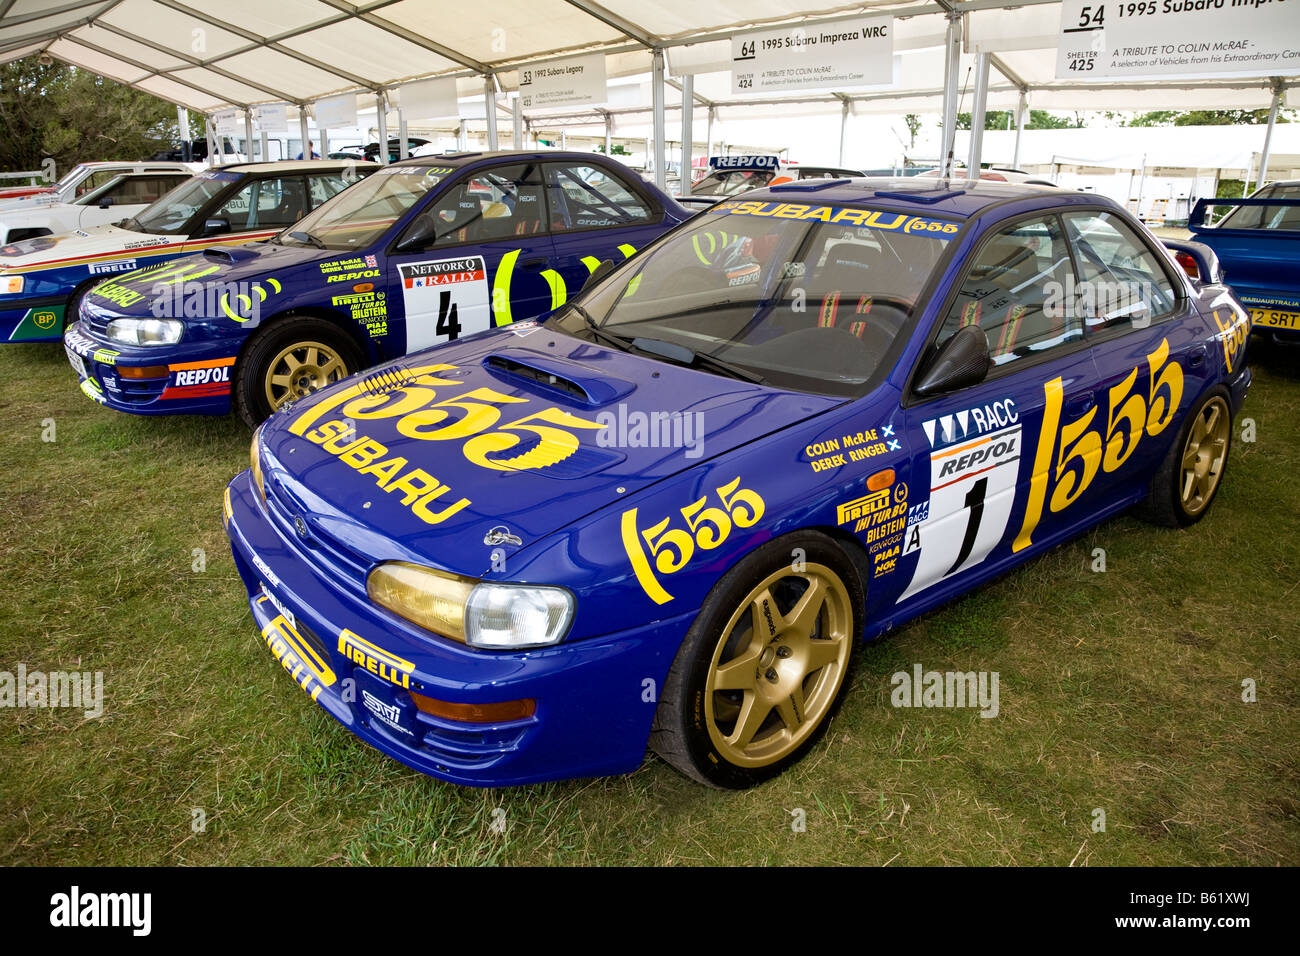 1995 Subaru Impreza WRC rally car nel paddock di Goodwood Festival of Speed, Sussex, Regno Unito. Foto Stock